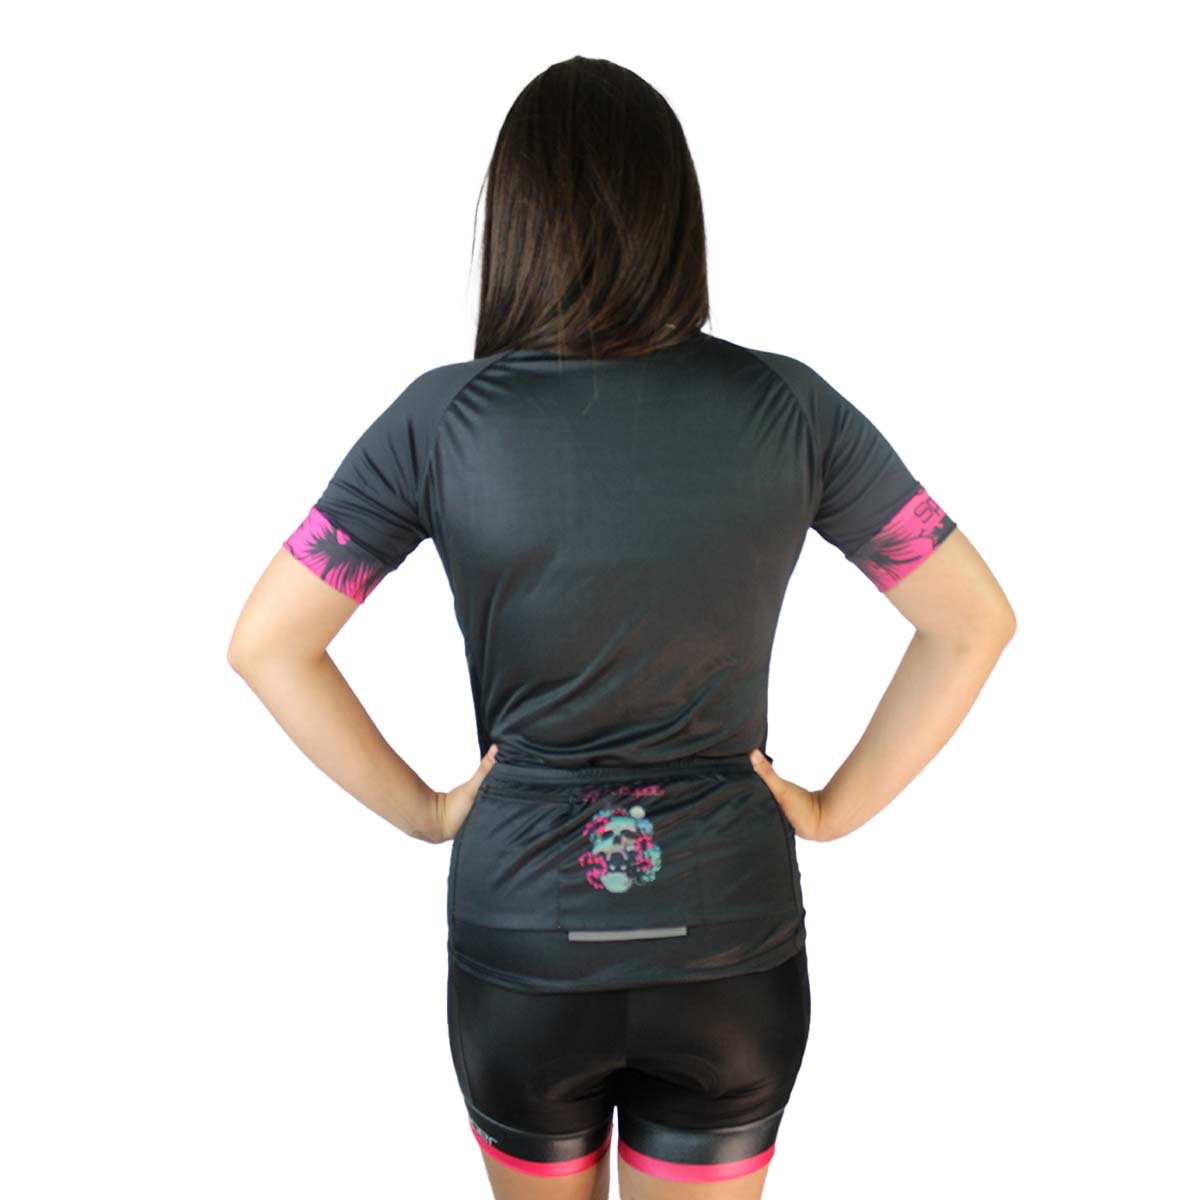 Camisa Sport Pepper Feminina Caveira Jalapenho Preta Verde e Rosa Ciclismo 22